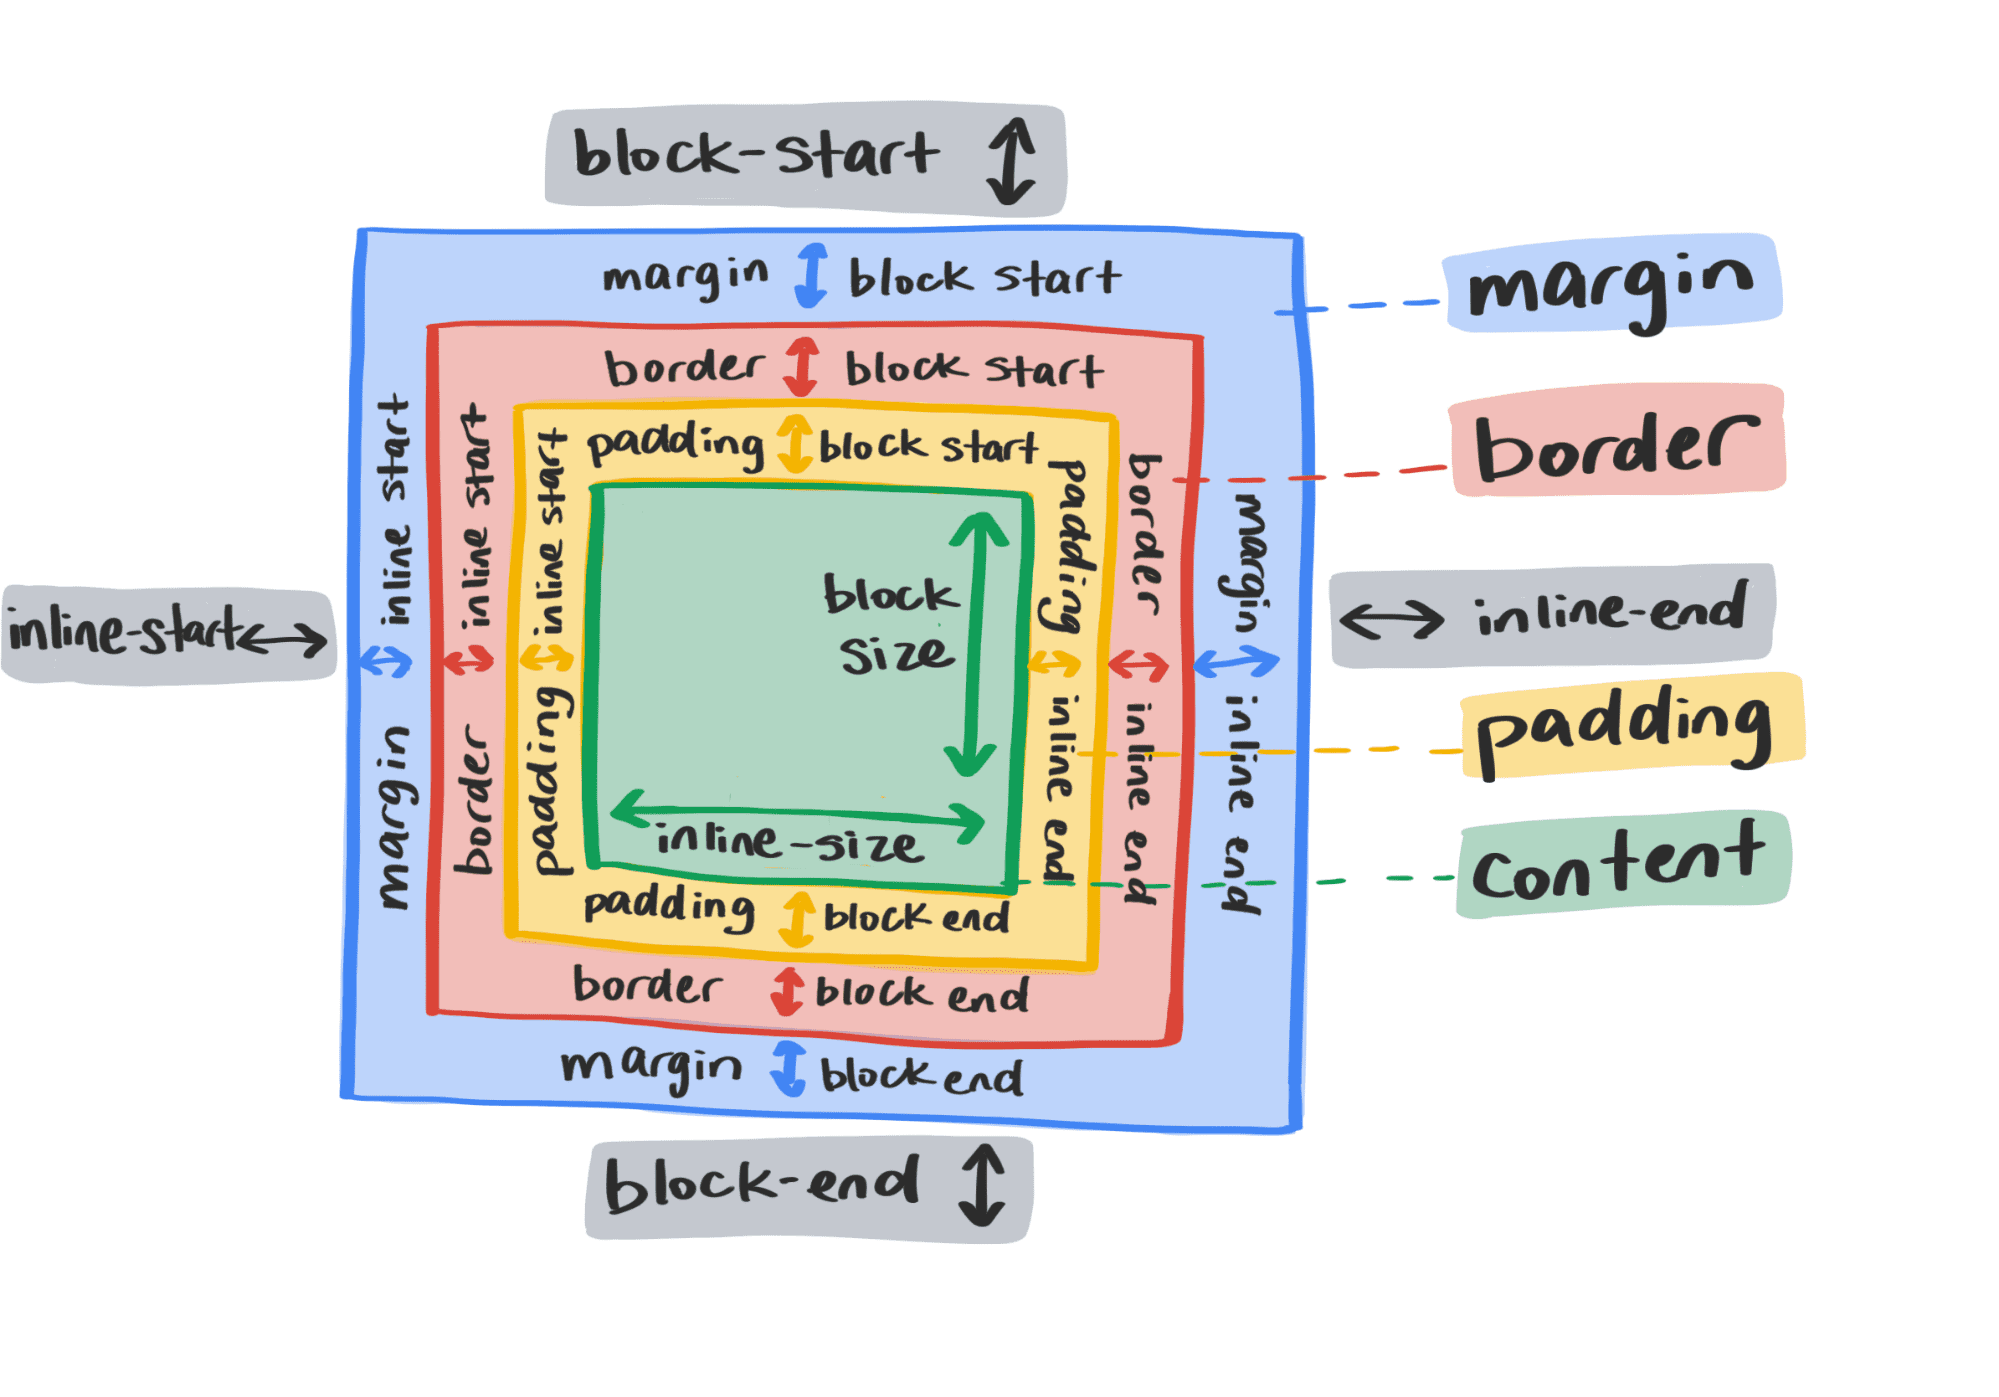 Diagramma che mostra le nuove proprietà del layout logico CSS.